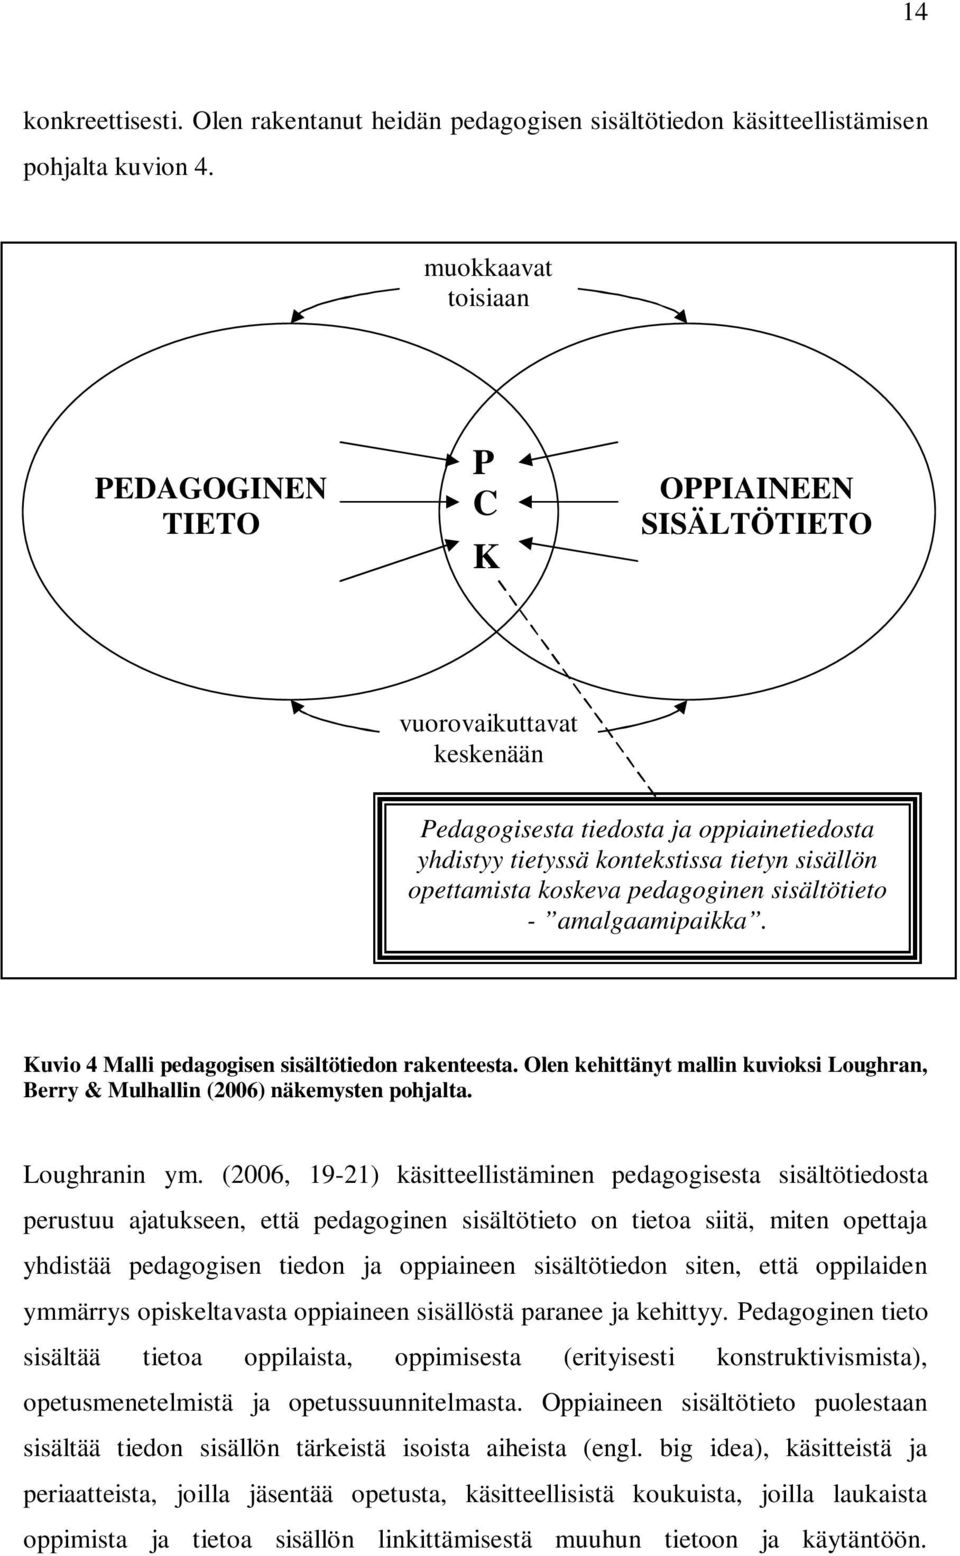 koskeva pedagoginen sisältötieto - amalgaamipaikka. Kuvio 4 Malli pedagogisen sisältötiedon rakenteesta. Olen kehittänyt mallin kuvioksi Loughran, Berry & Mulhallin (2006) näkemysten pohjalta.